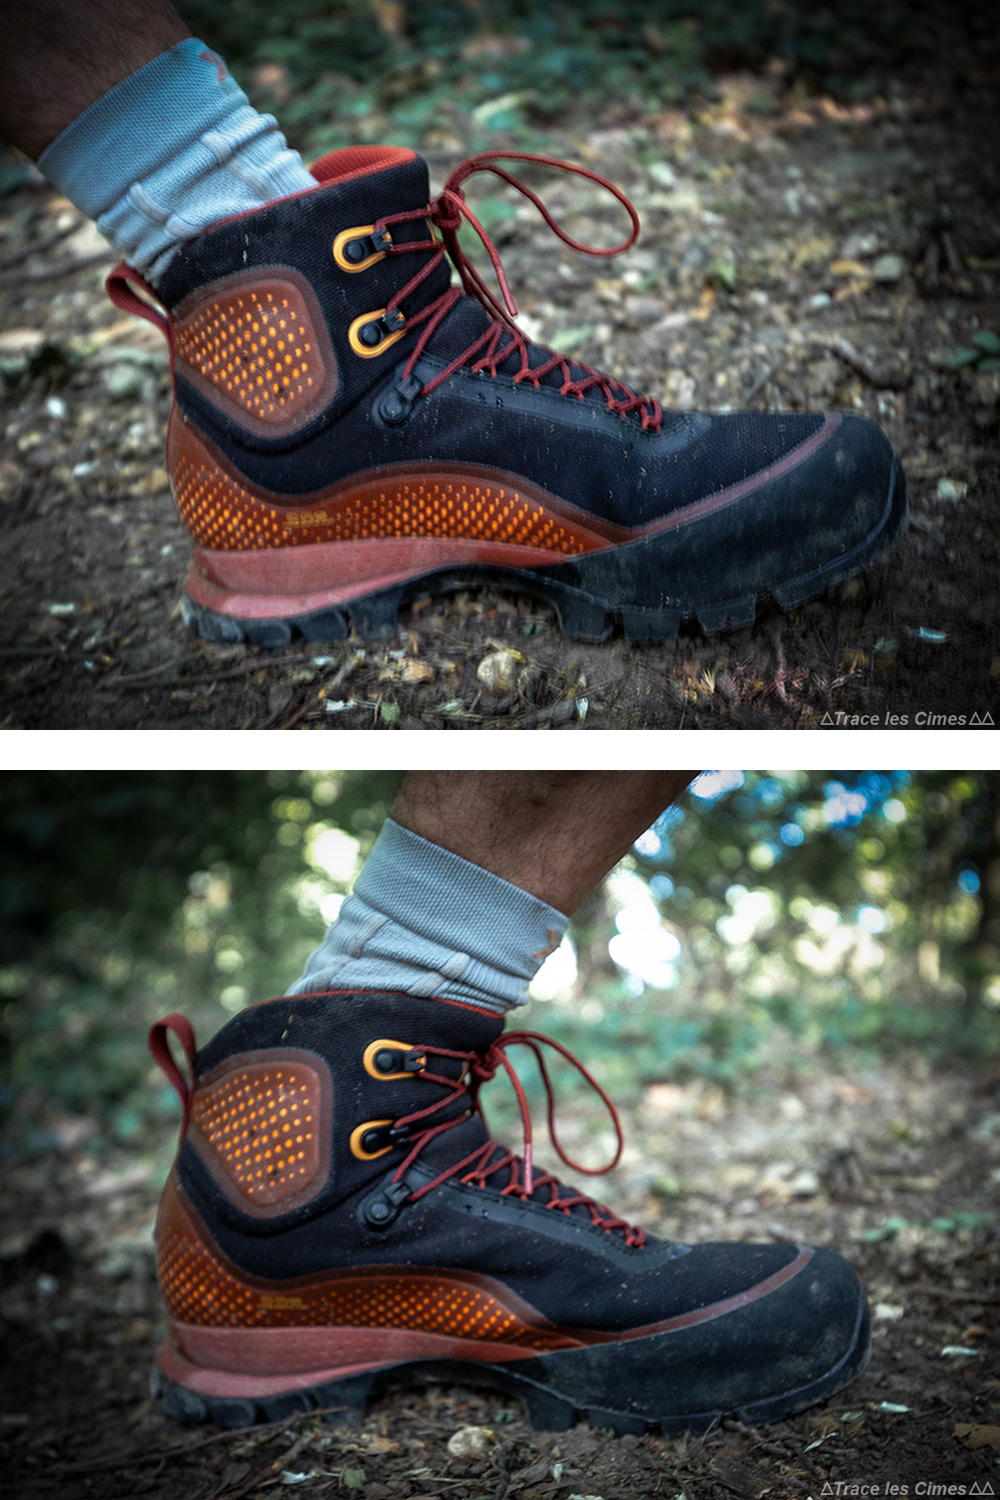 TECNICA Forge S GTX chaussures de randonnées homme noires et oranges Neuves 